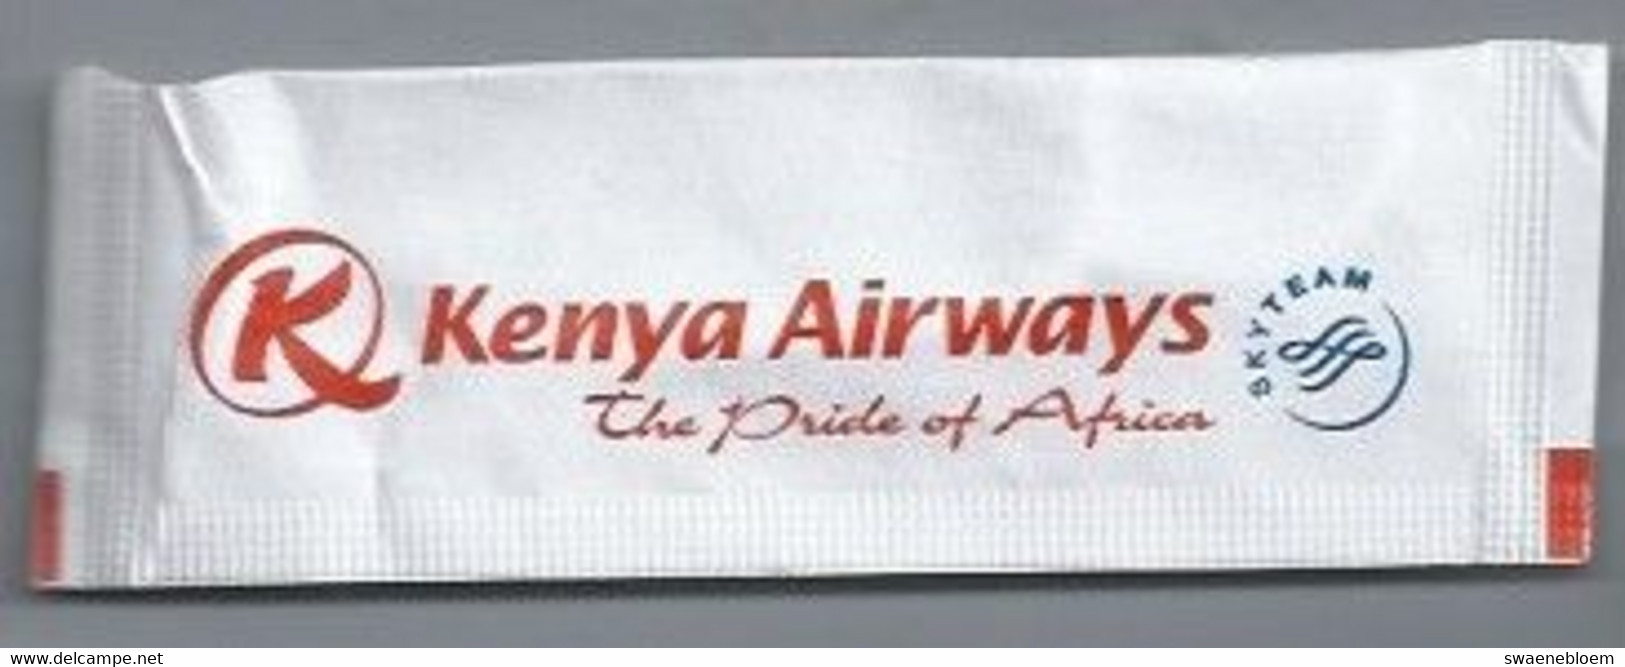 PB.- KENYA AIRWAYS. THE PRIDE OF AFRICA. SKY TEAM. Roerstokje - Roerstokjes